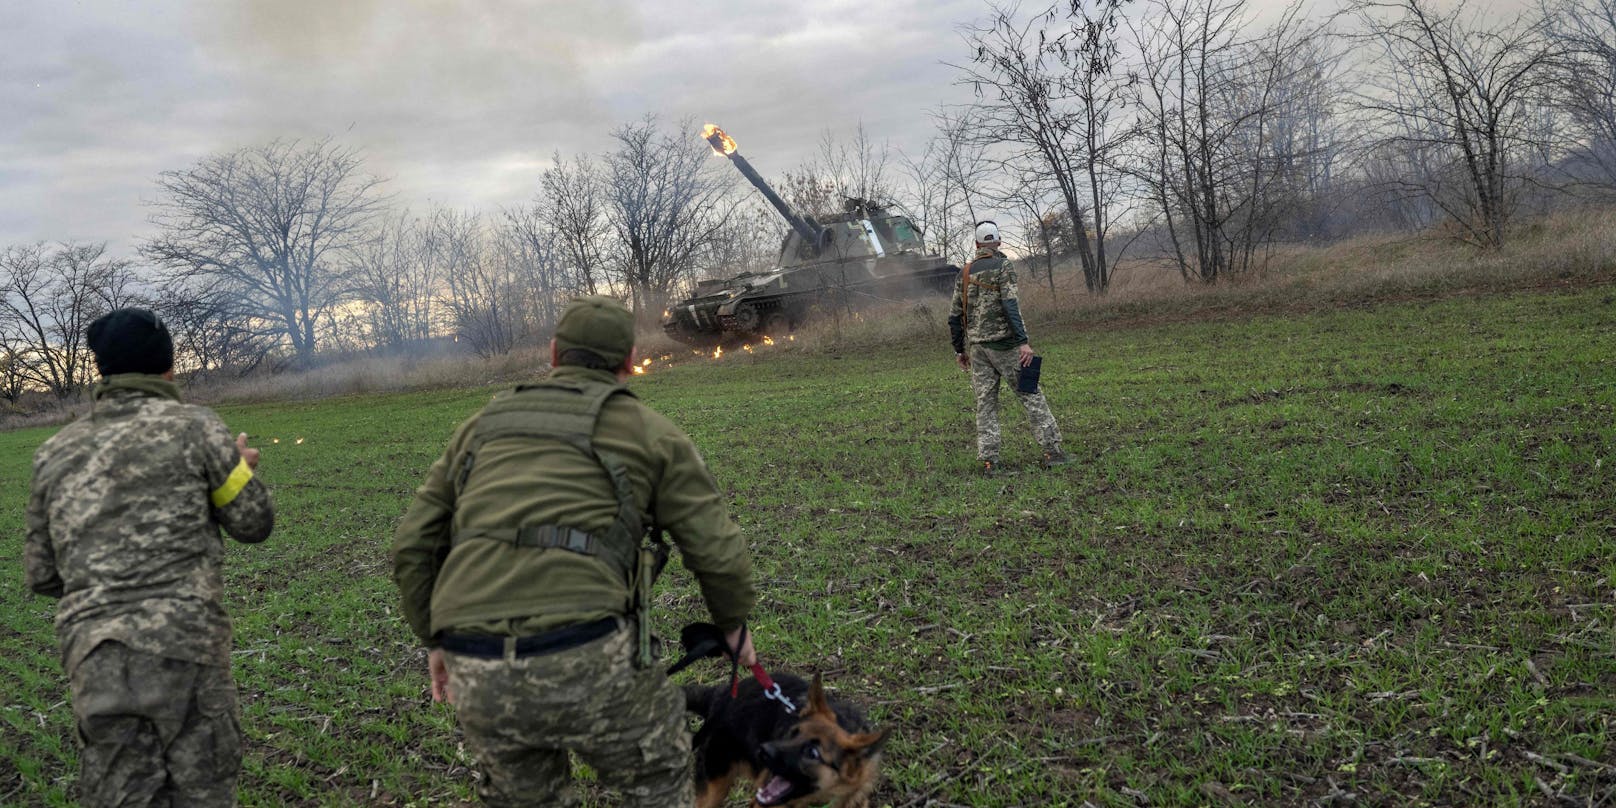 Urkainische Artillerie-Mitglieder feuern auf russische Stellungen bei Cherson (Archivfoto)